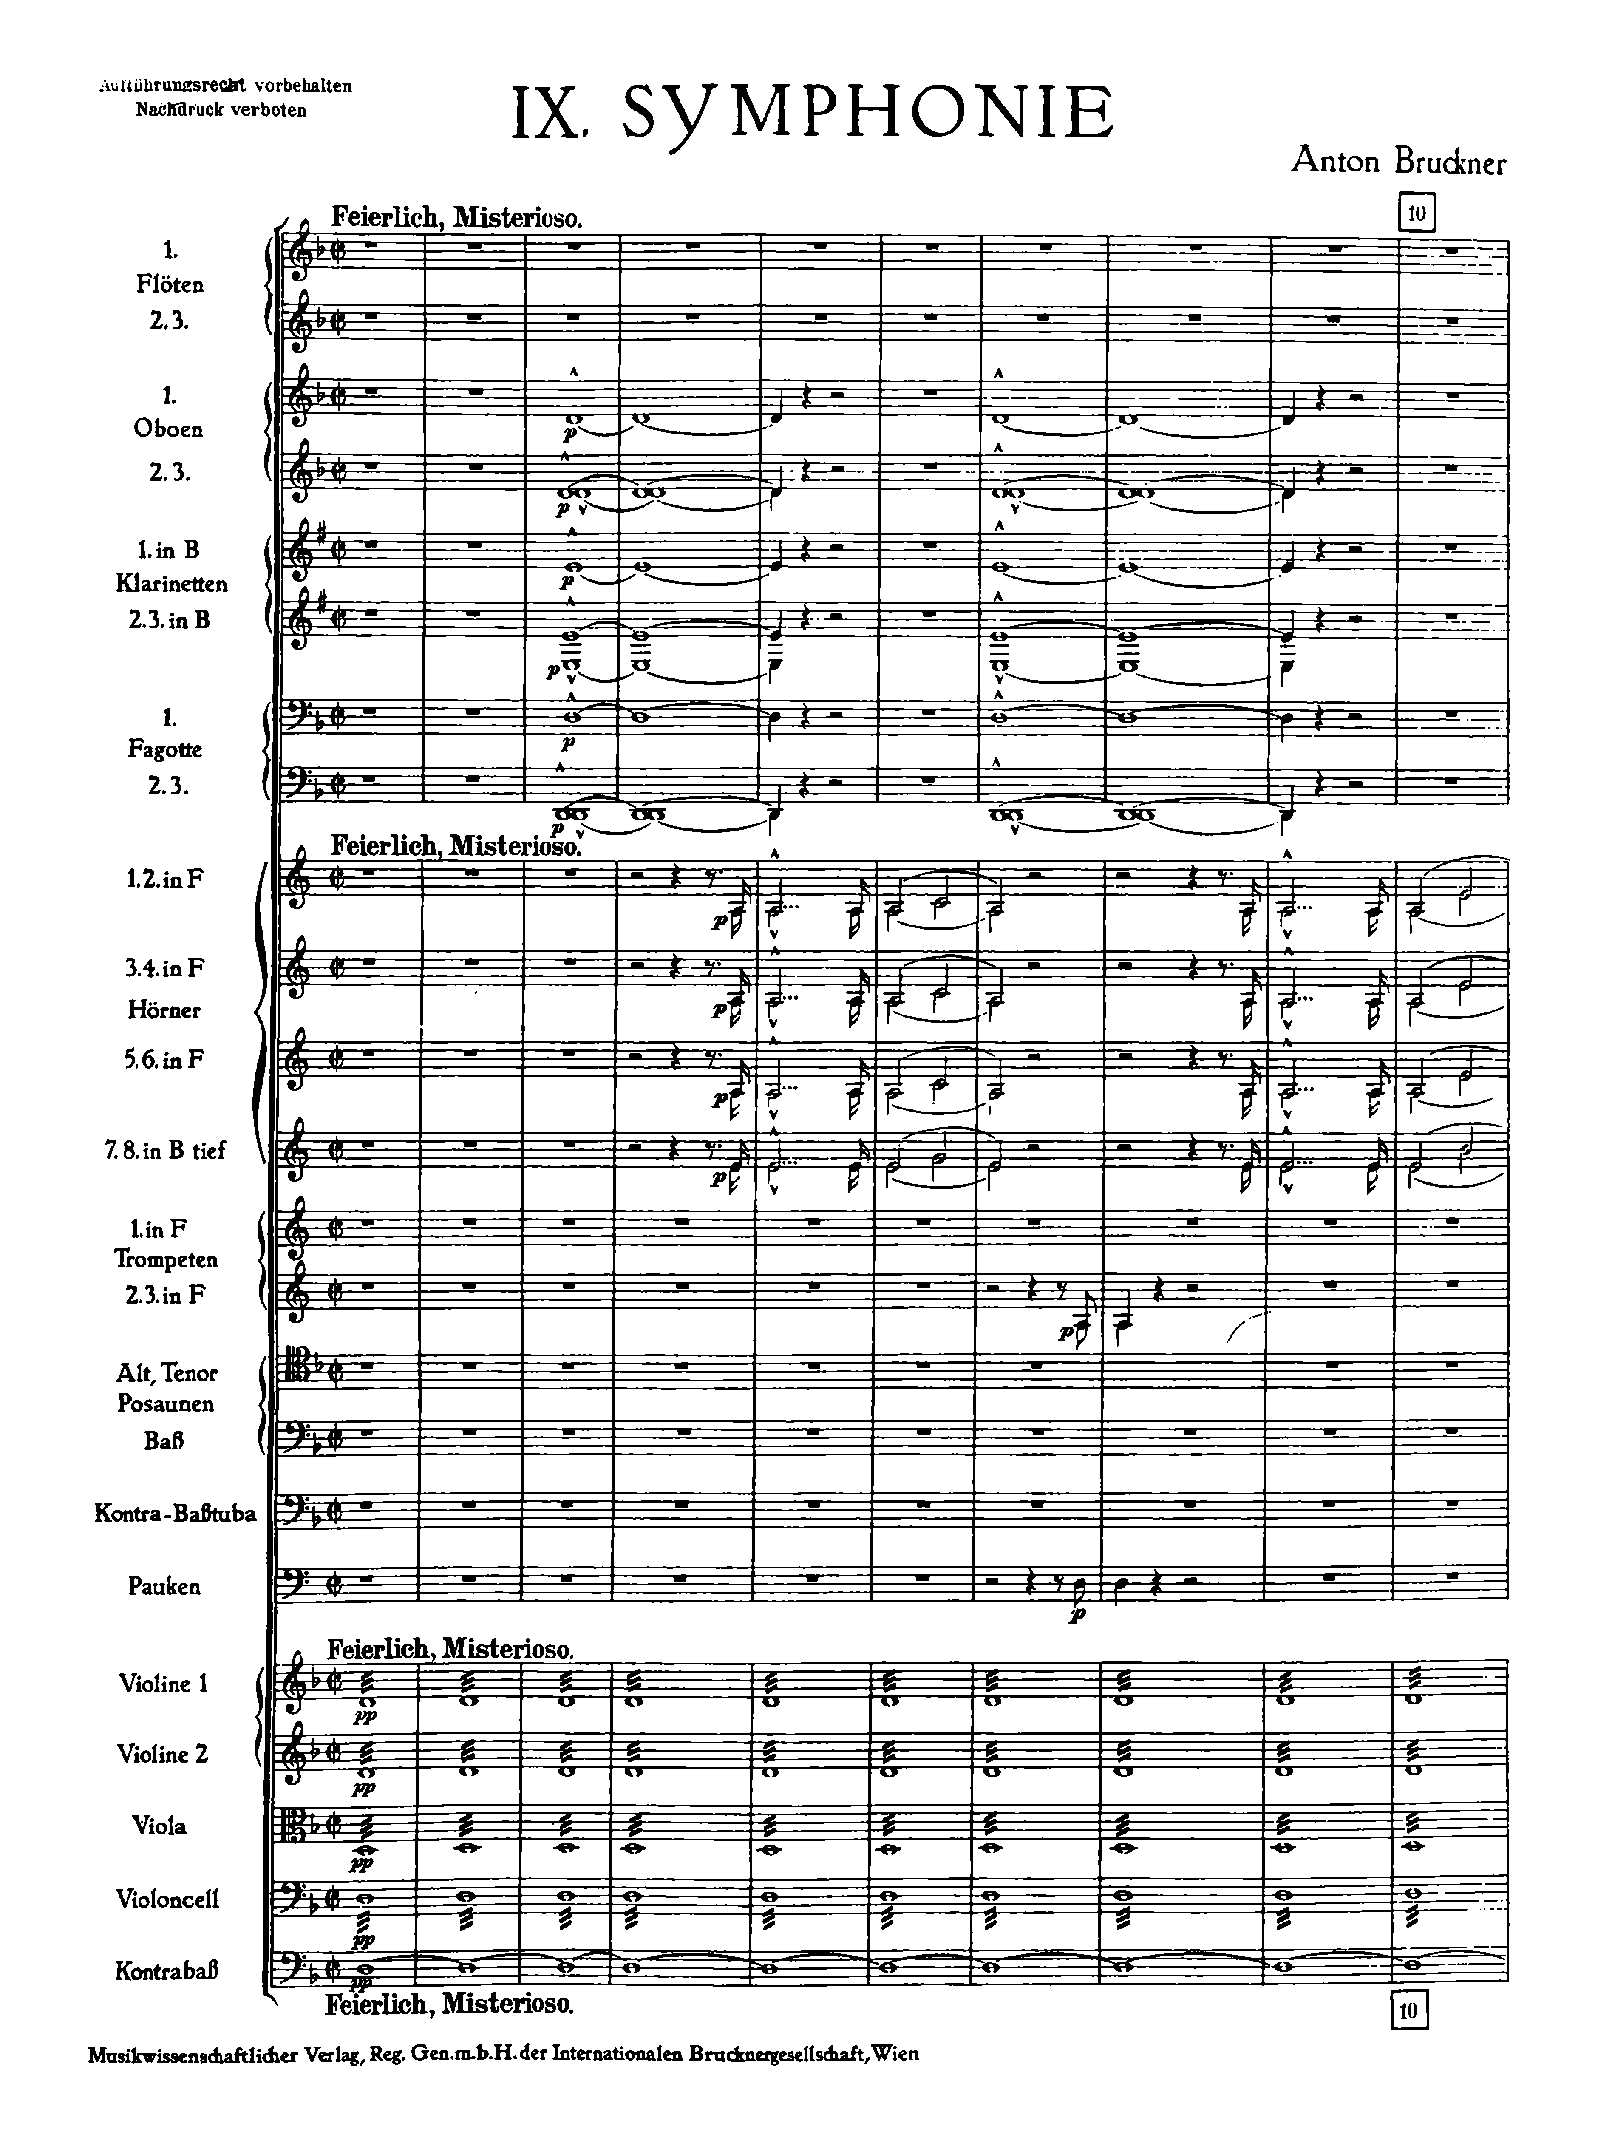 Bruckner, Anton - Symphony No.9 in D minor, WAB 109 Sheet music for ...